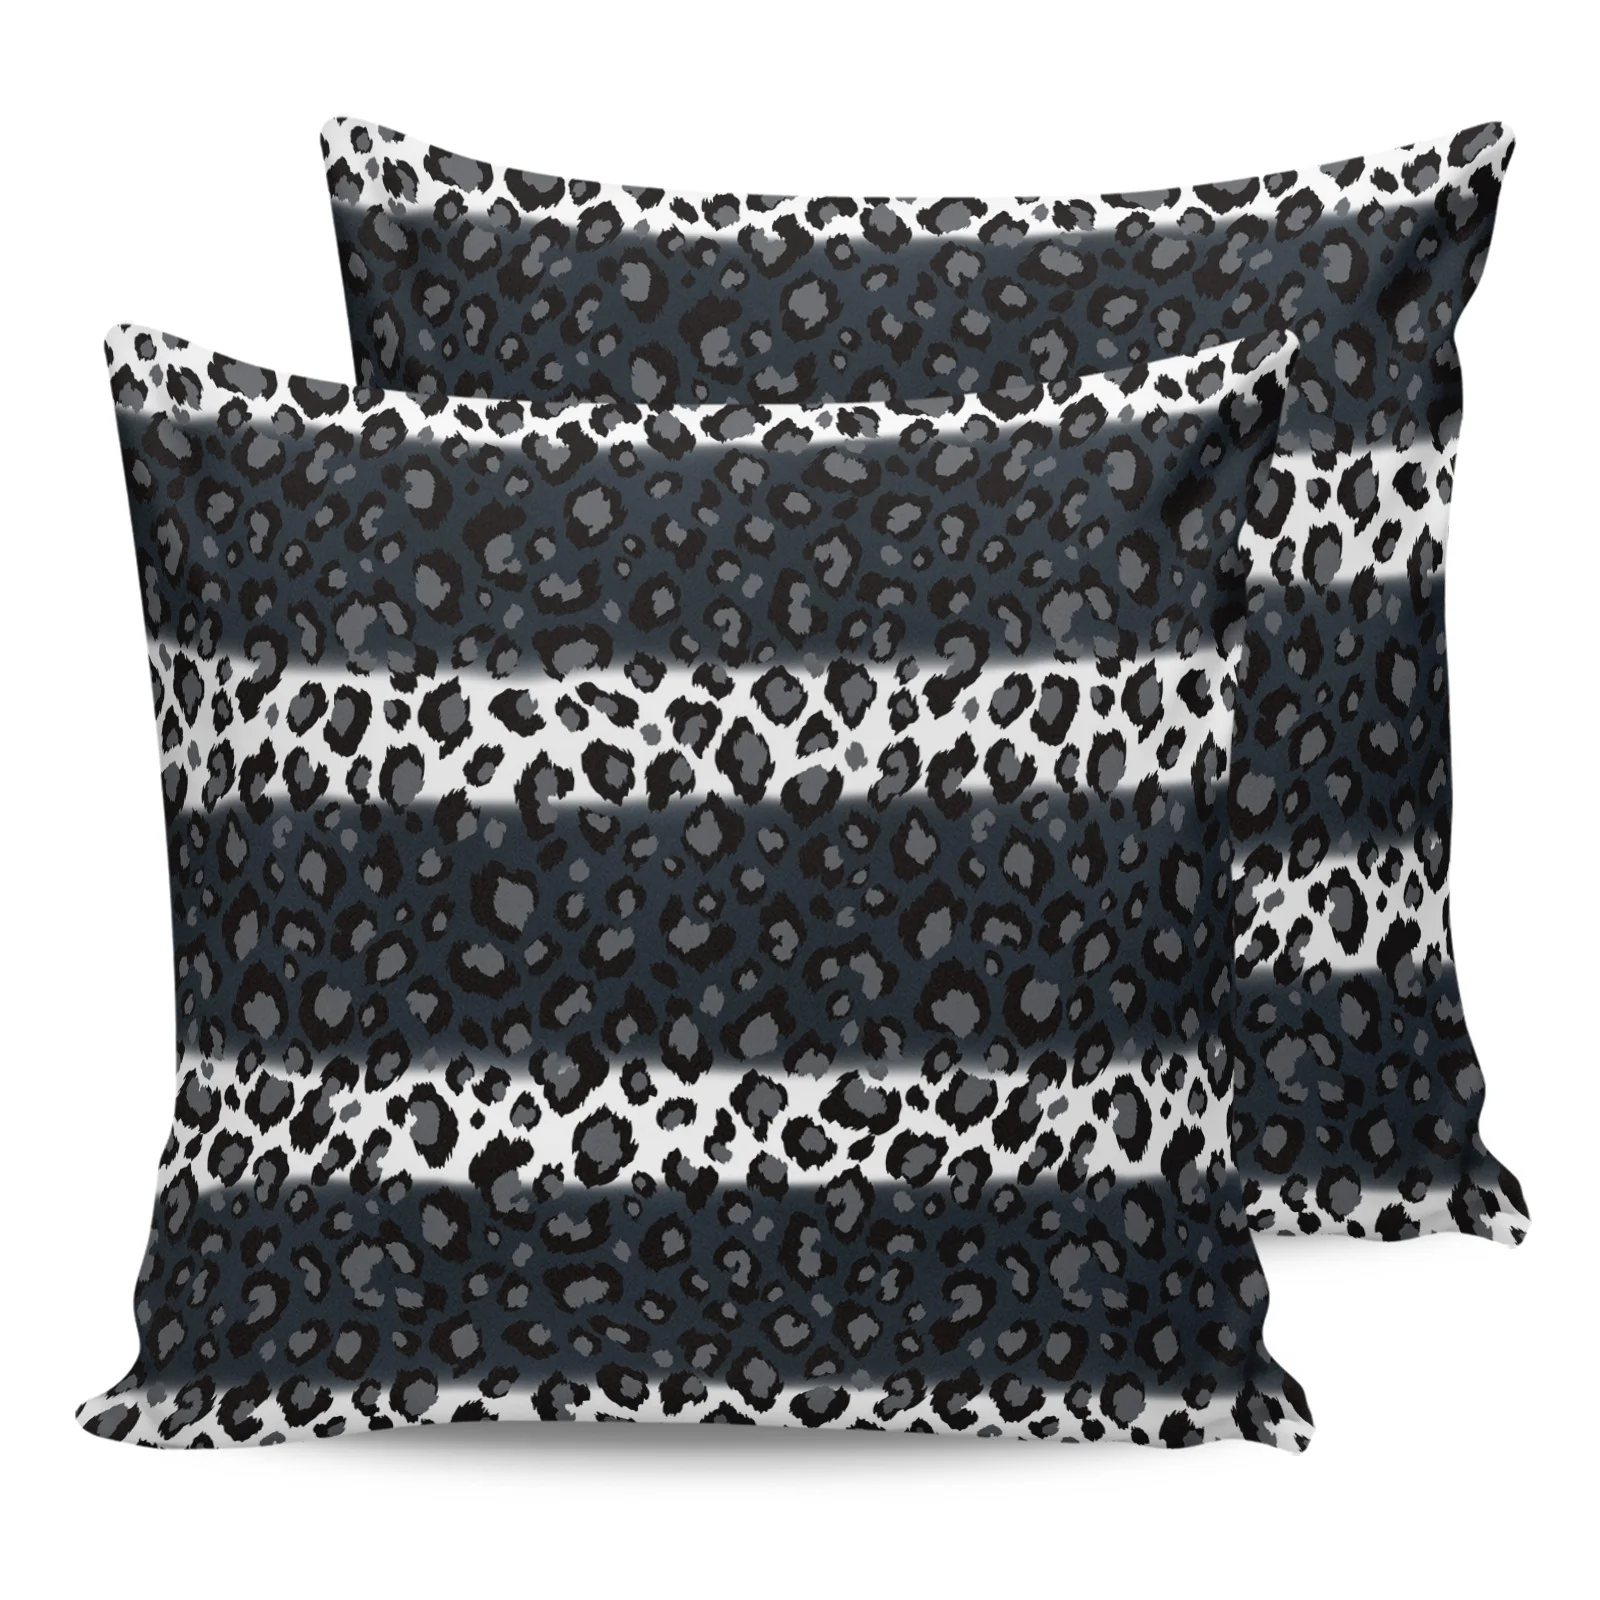 

2 шт. наволочка с леопардовым принтом, черно-белая полосатая наволочка для диванной подушки, чехол для детской комнаты